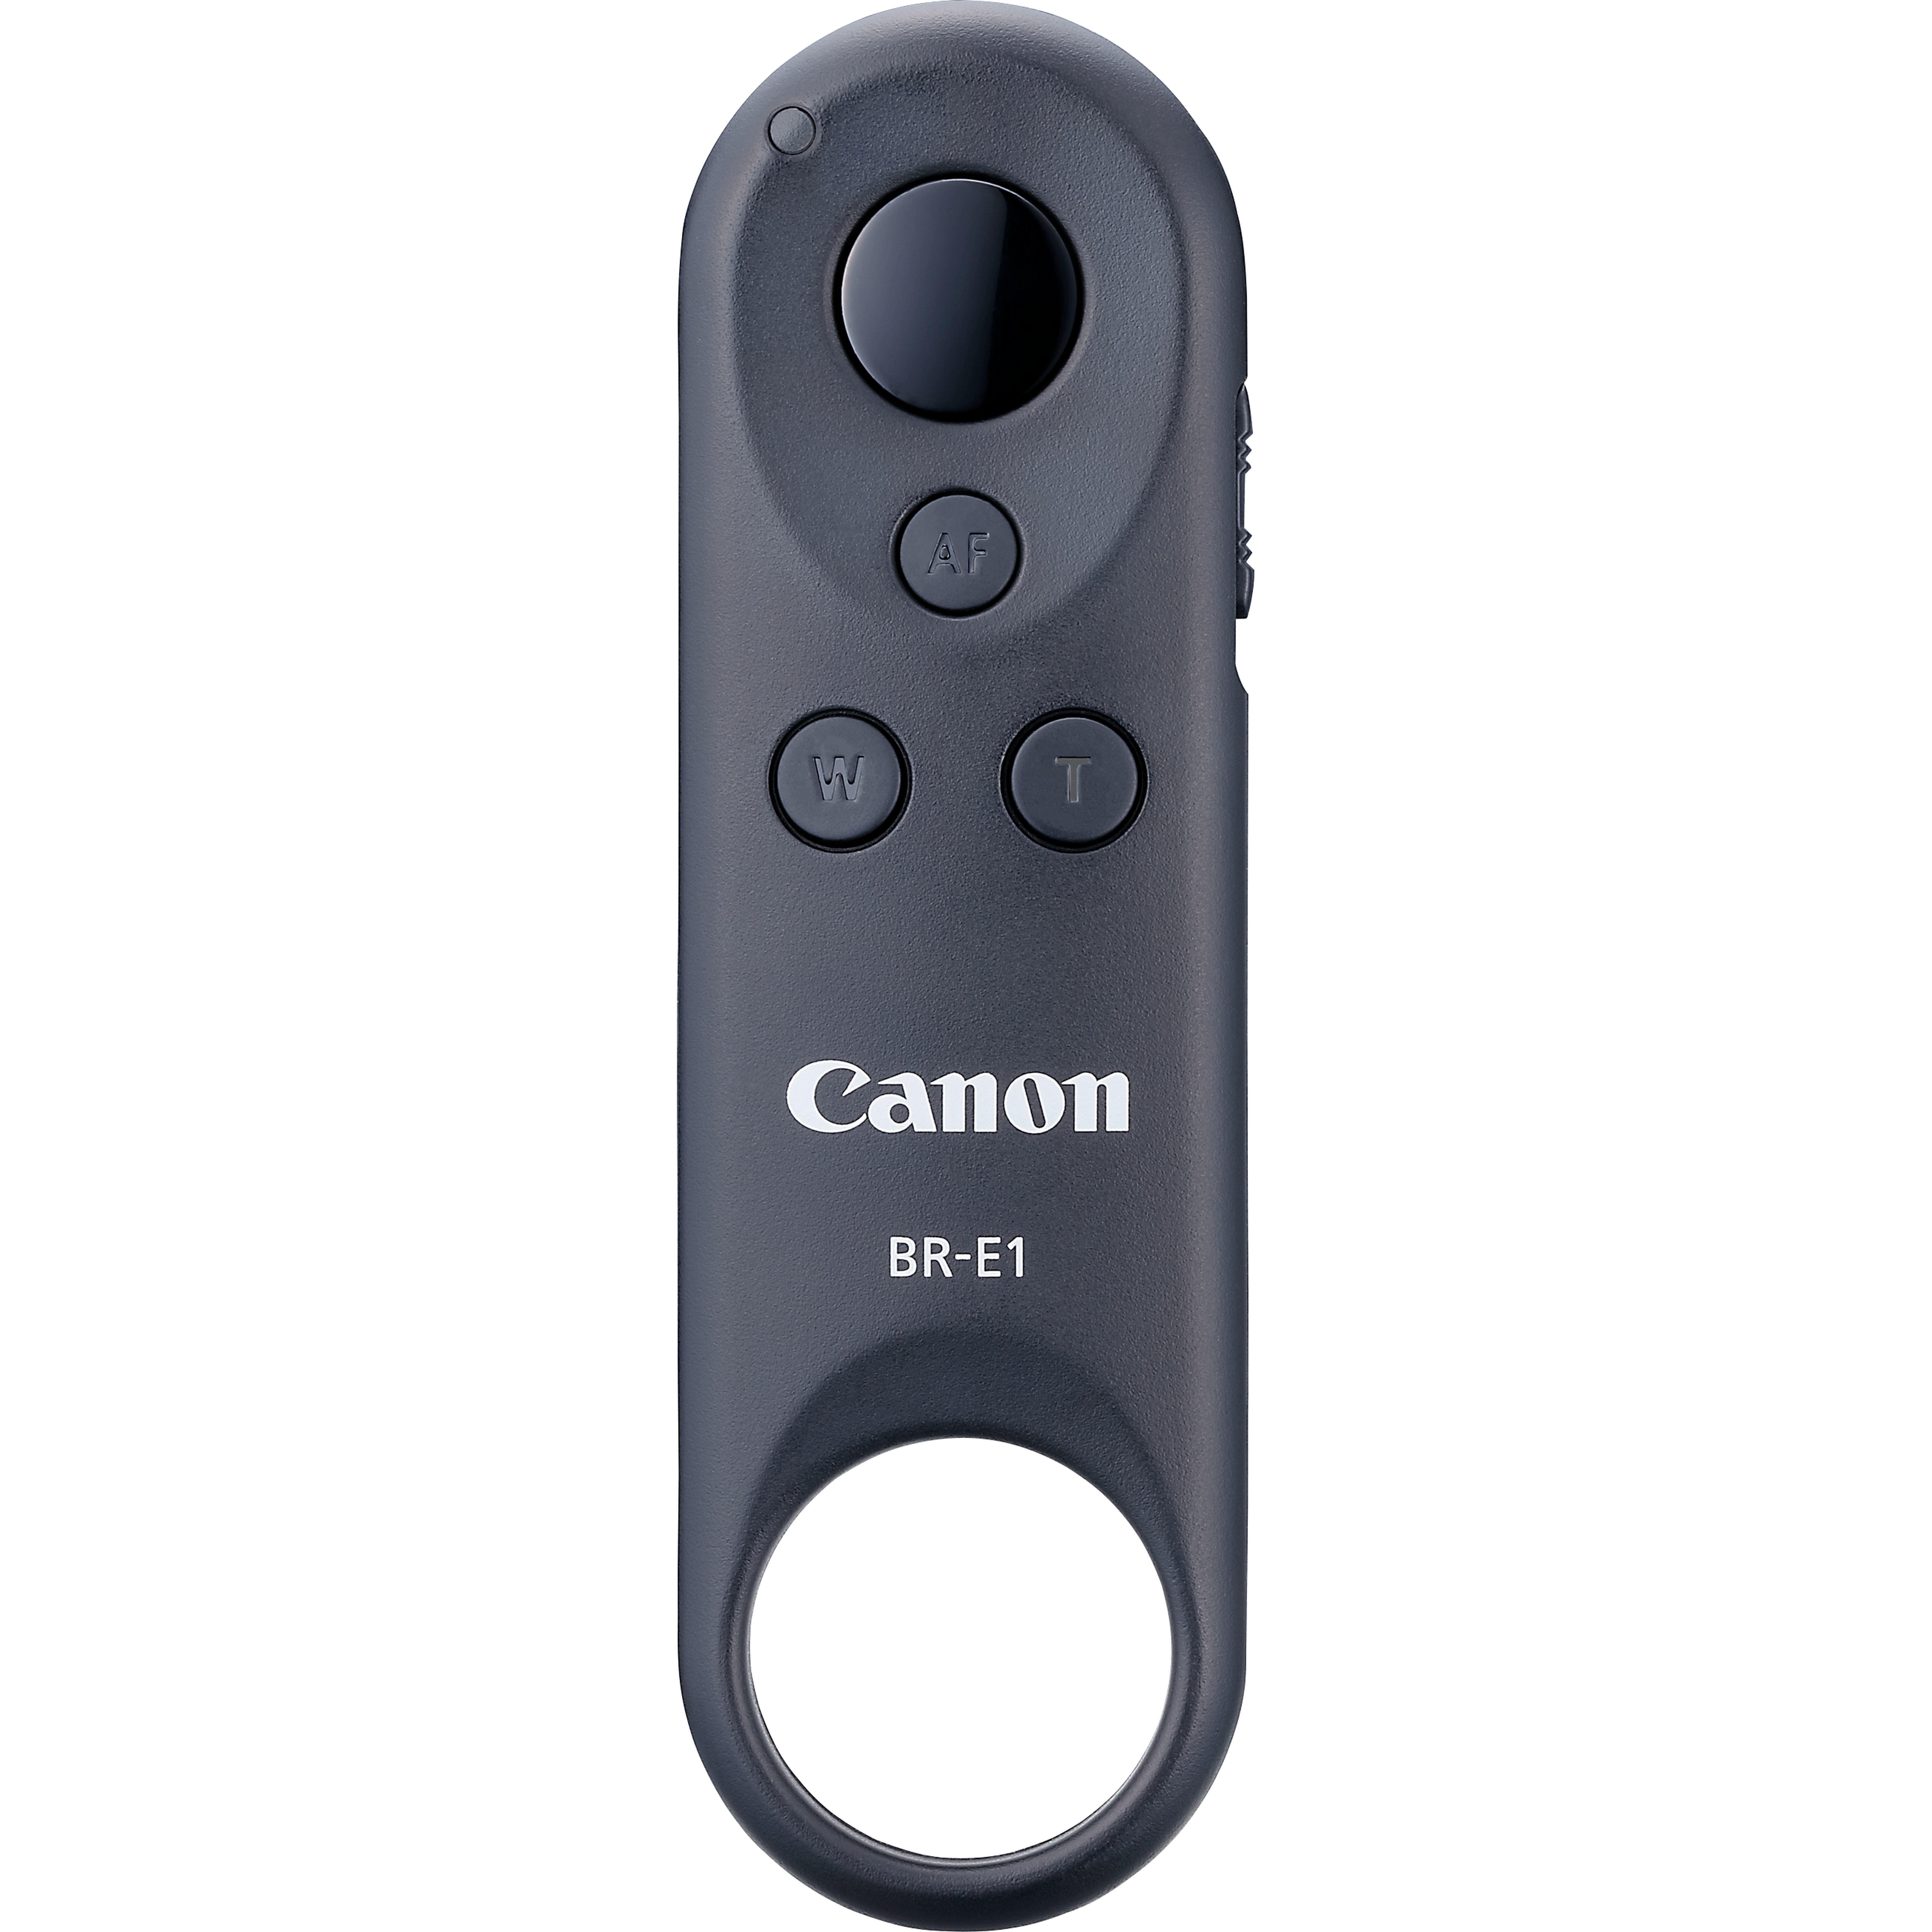 Canon Be-E1 Telecomando A Distanza, NFC, Wi-Fi, Bluetooth, 5 m, Grigio 2140c001 - Foto 1 di 1